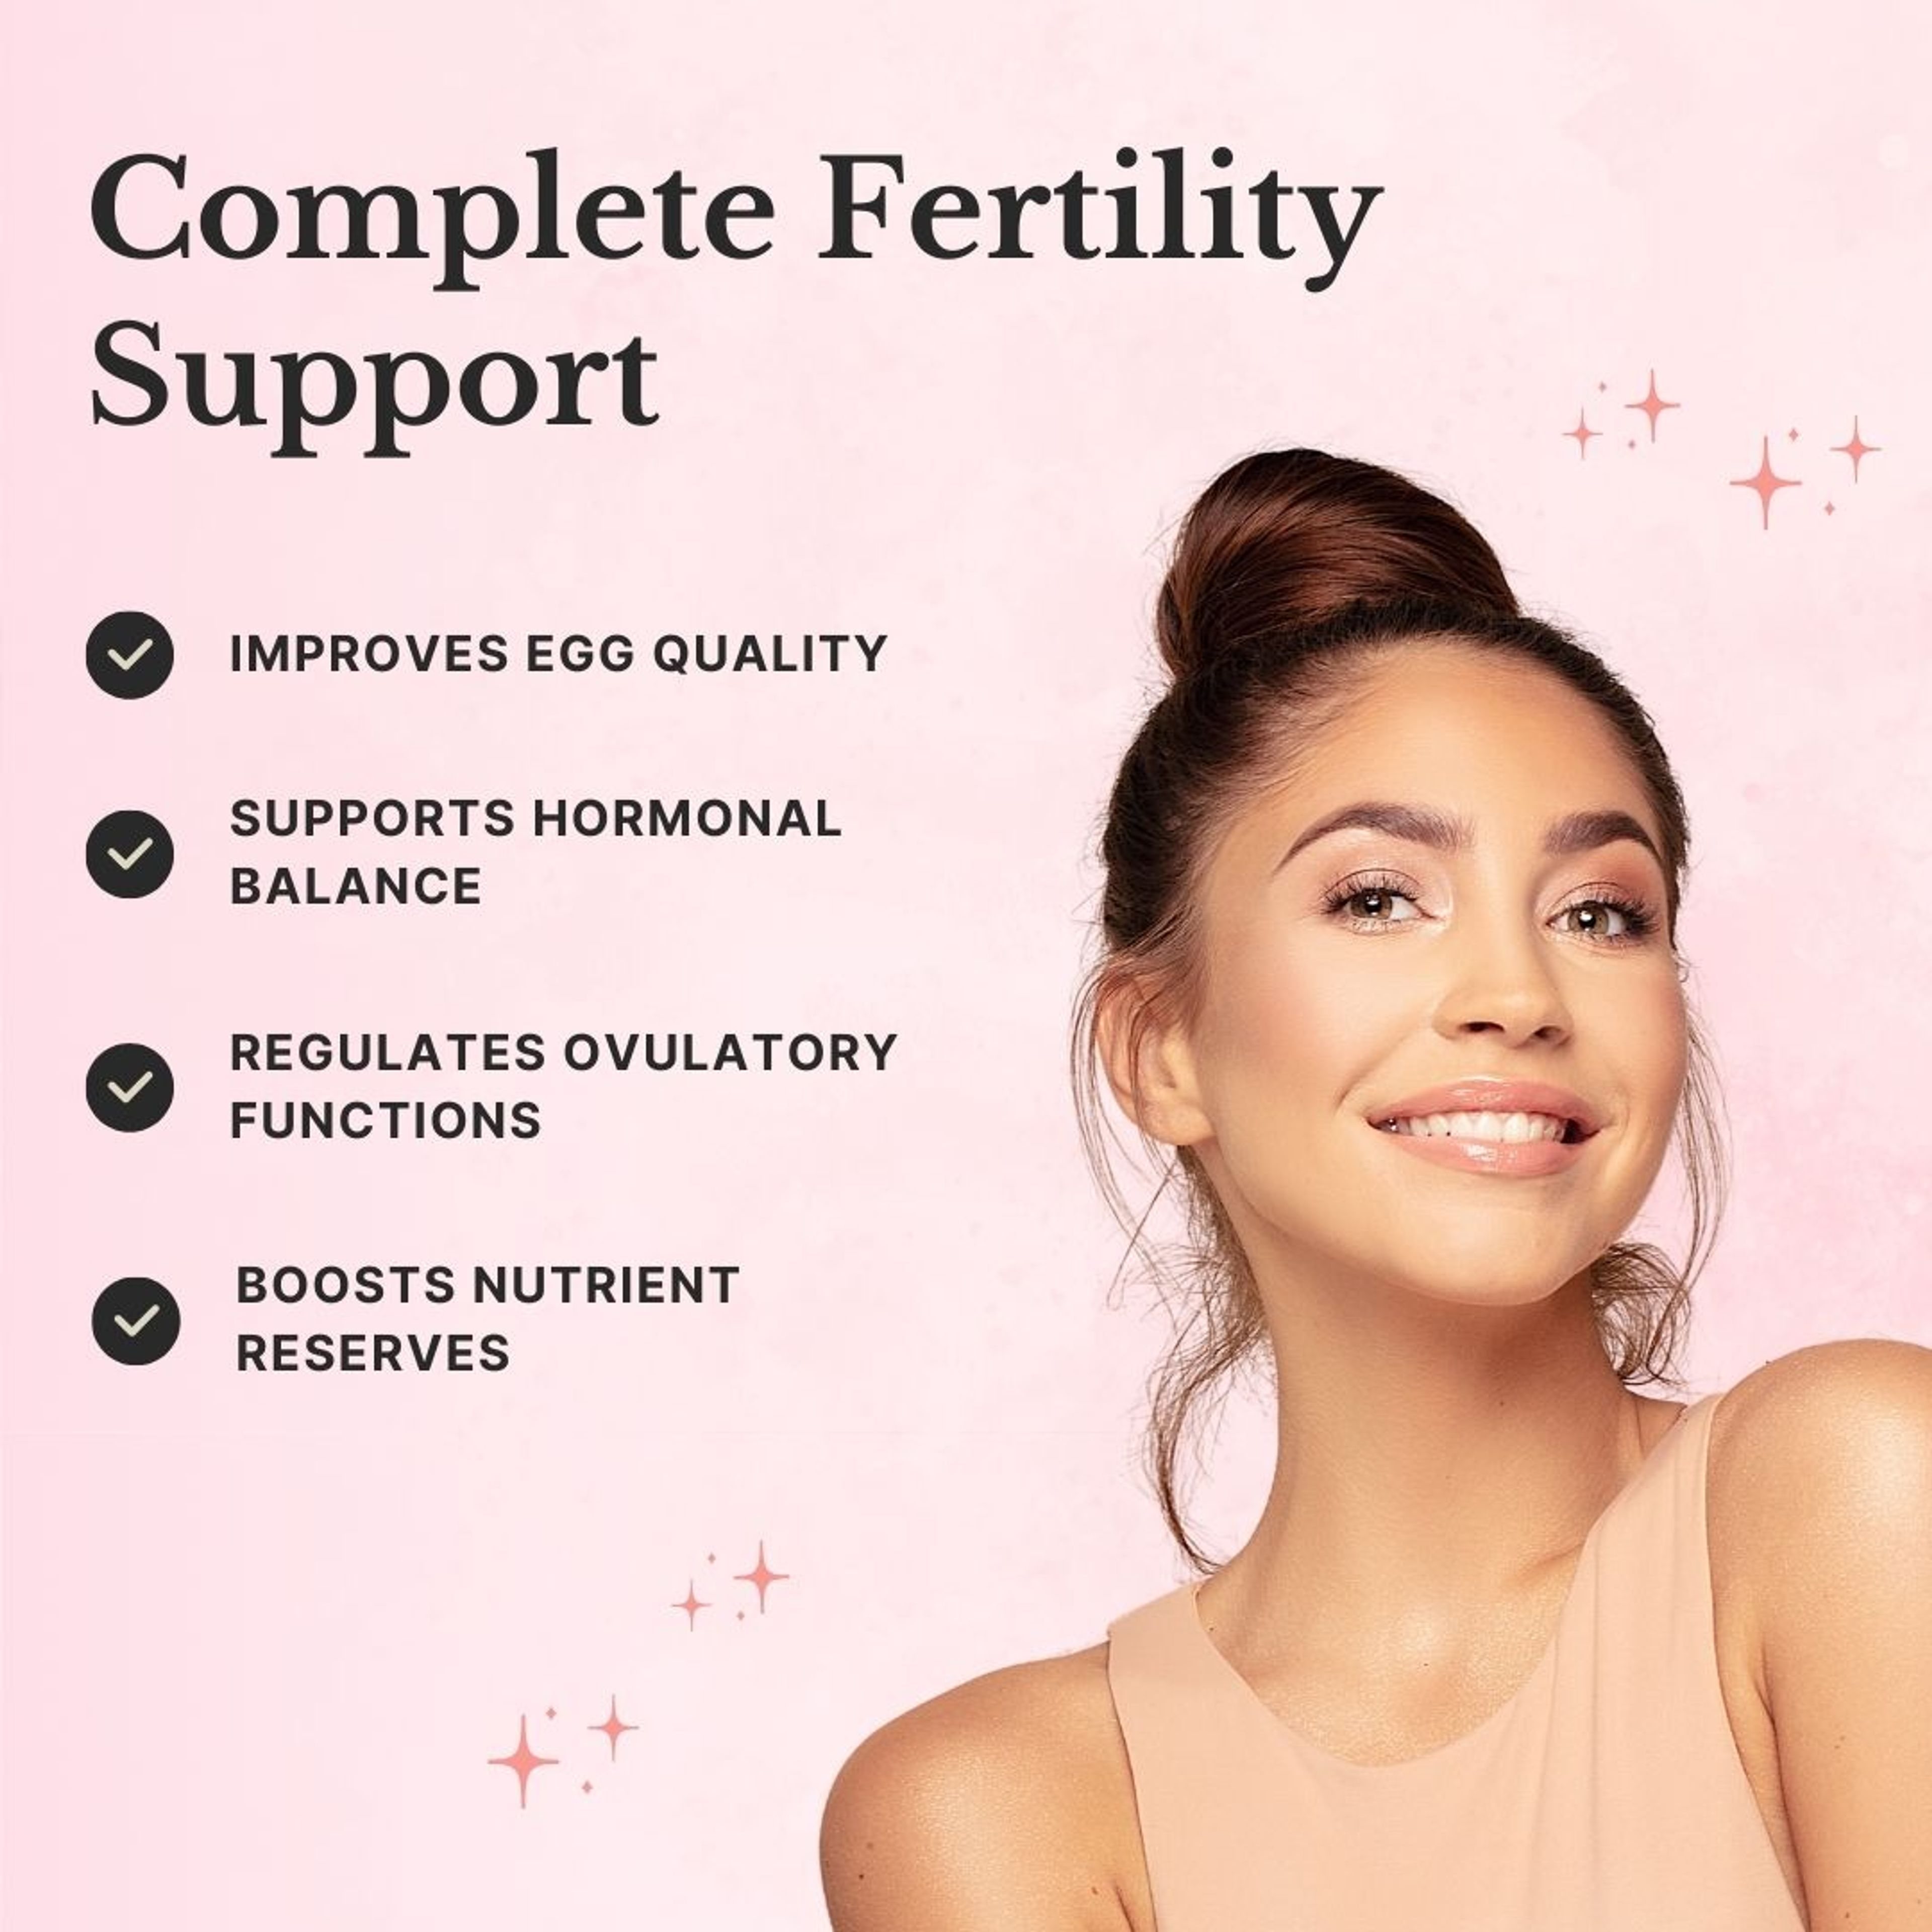 Women's Fertility Support